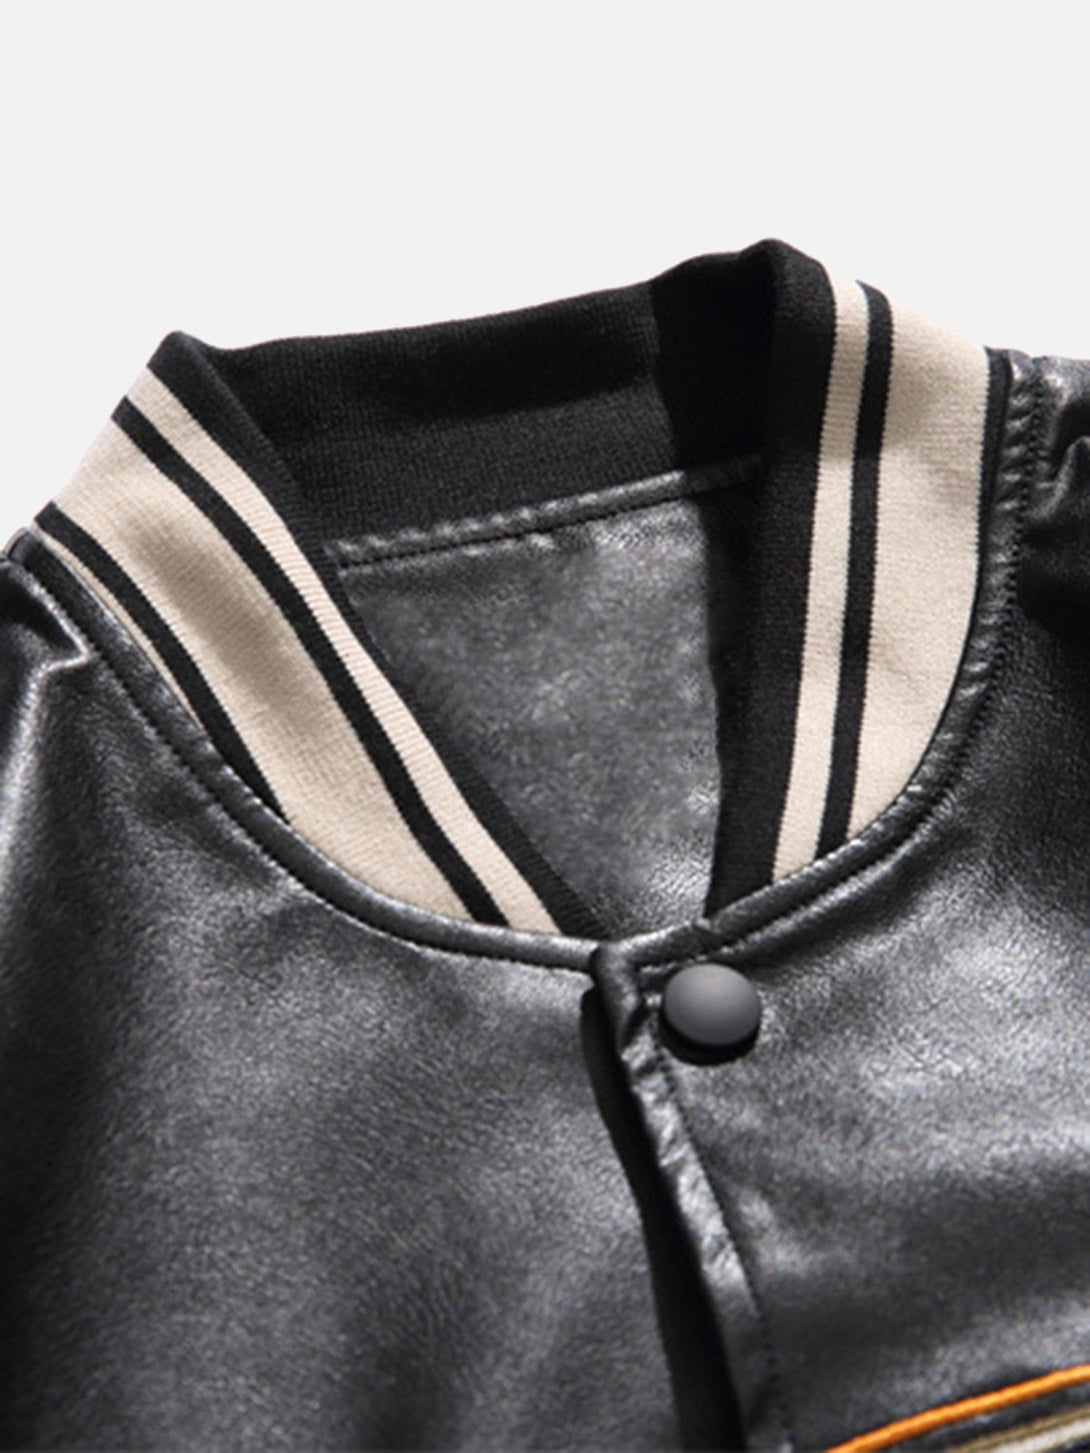 Majesda® - PU Leather Biker Jacket - 1921- Outfit Ideas - Streetwear Fashion - majesda.com